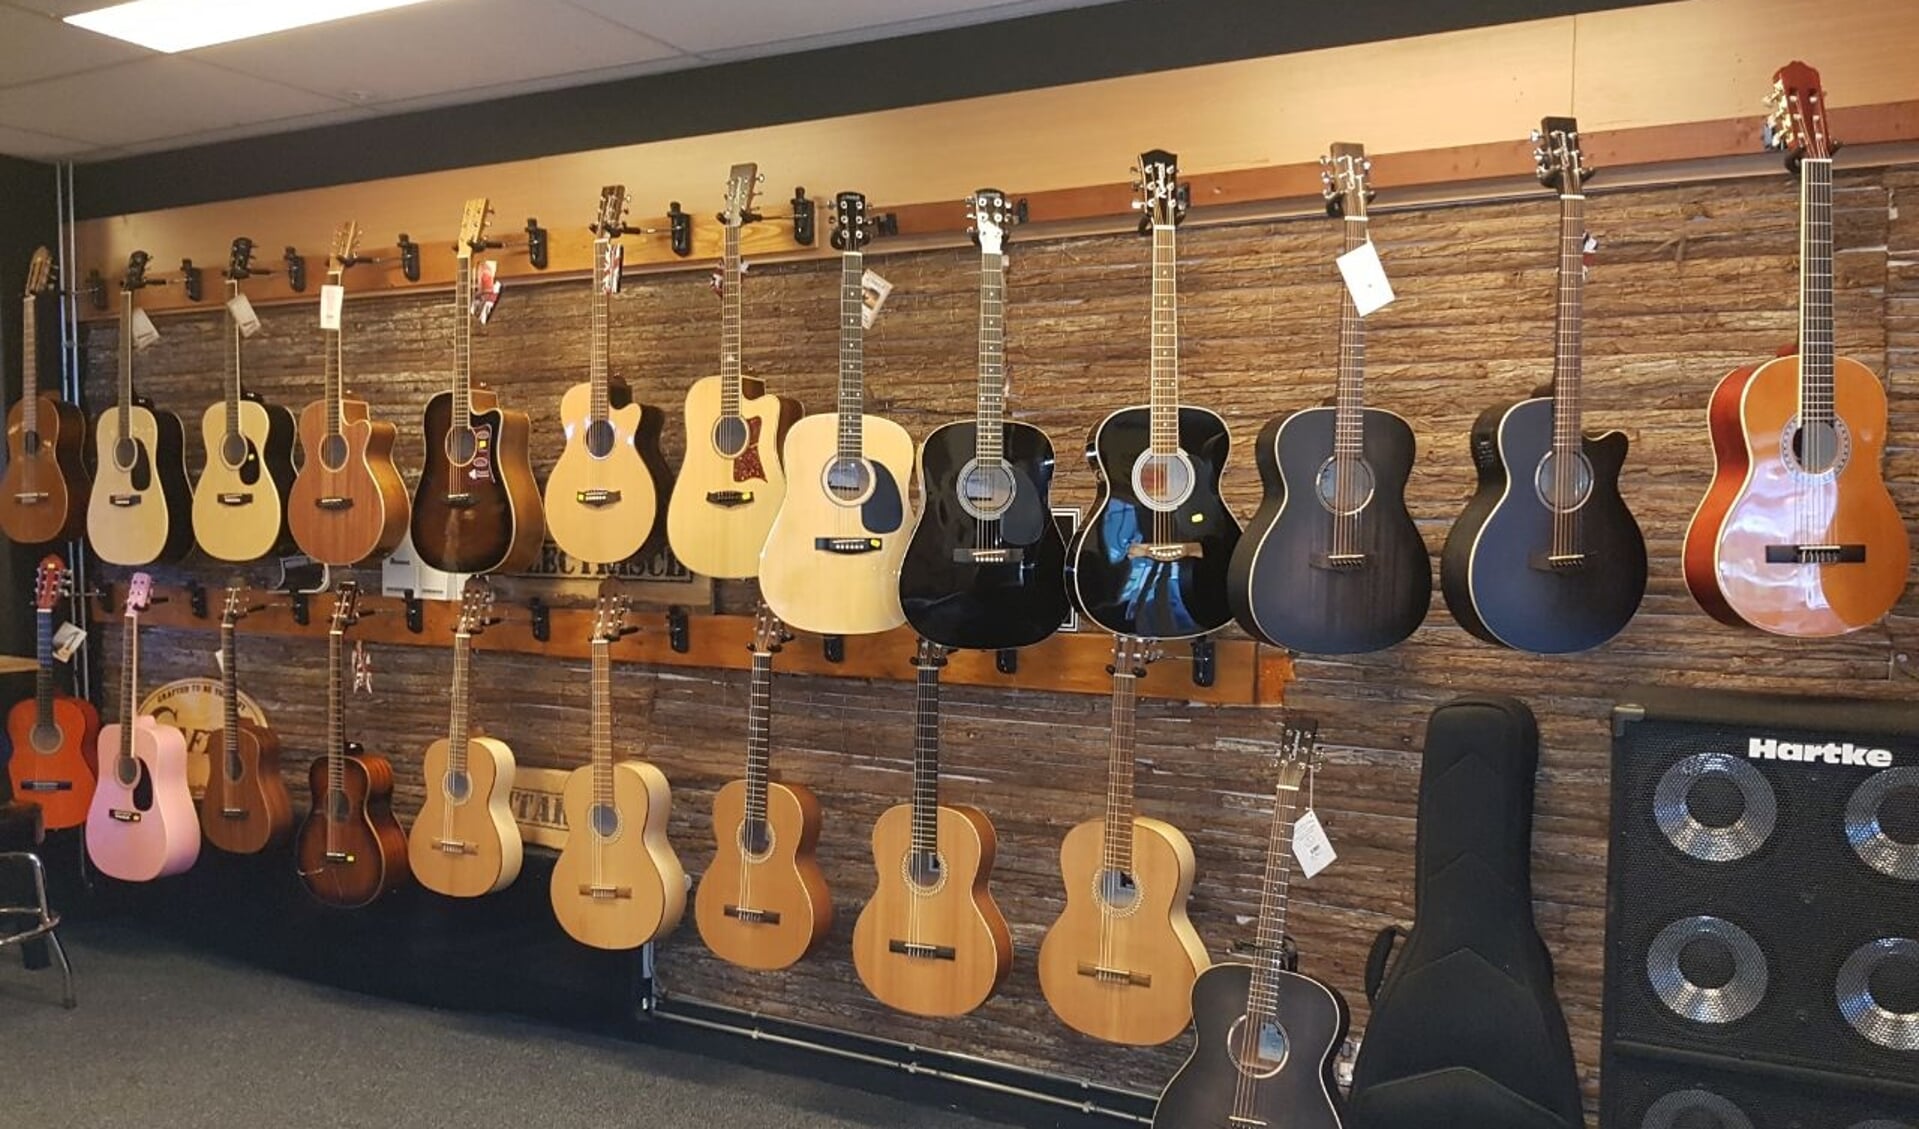 De gitaren in de winkel hangen speelklaar. Heel veel instrumenten zijn daarnaast te bestellen.